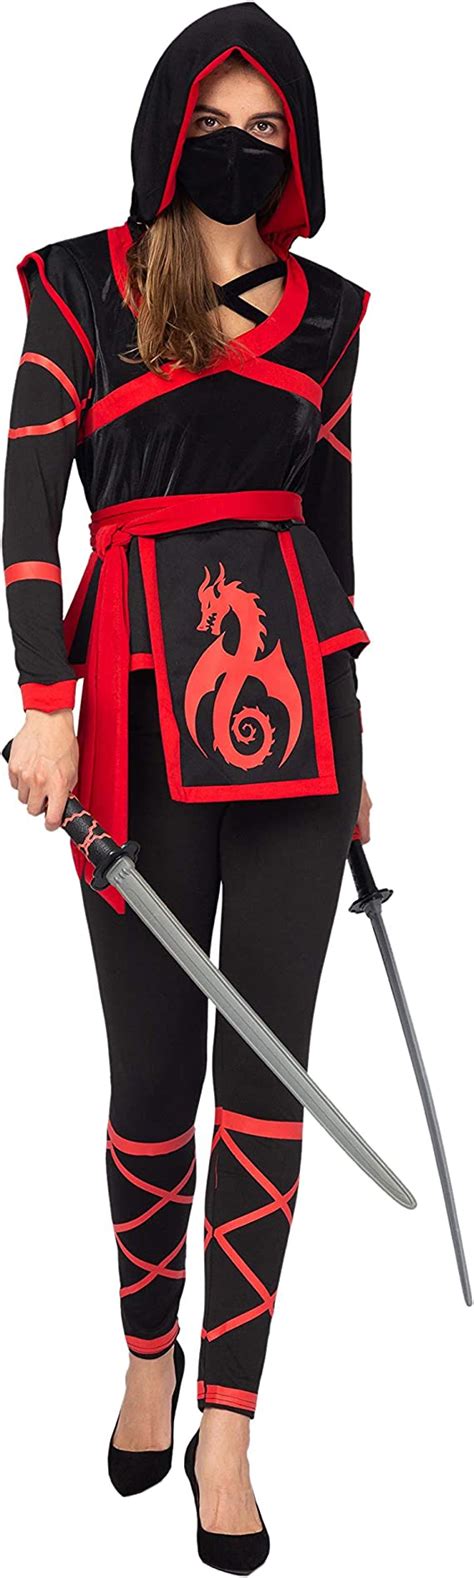 Spooktacular Creations Halloween Ninja Warrior Costume For Women With